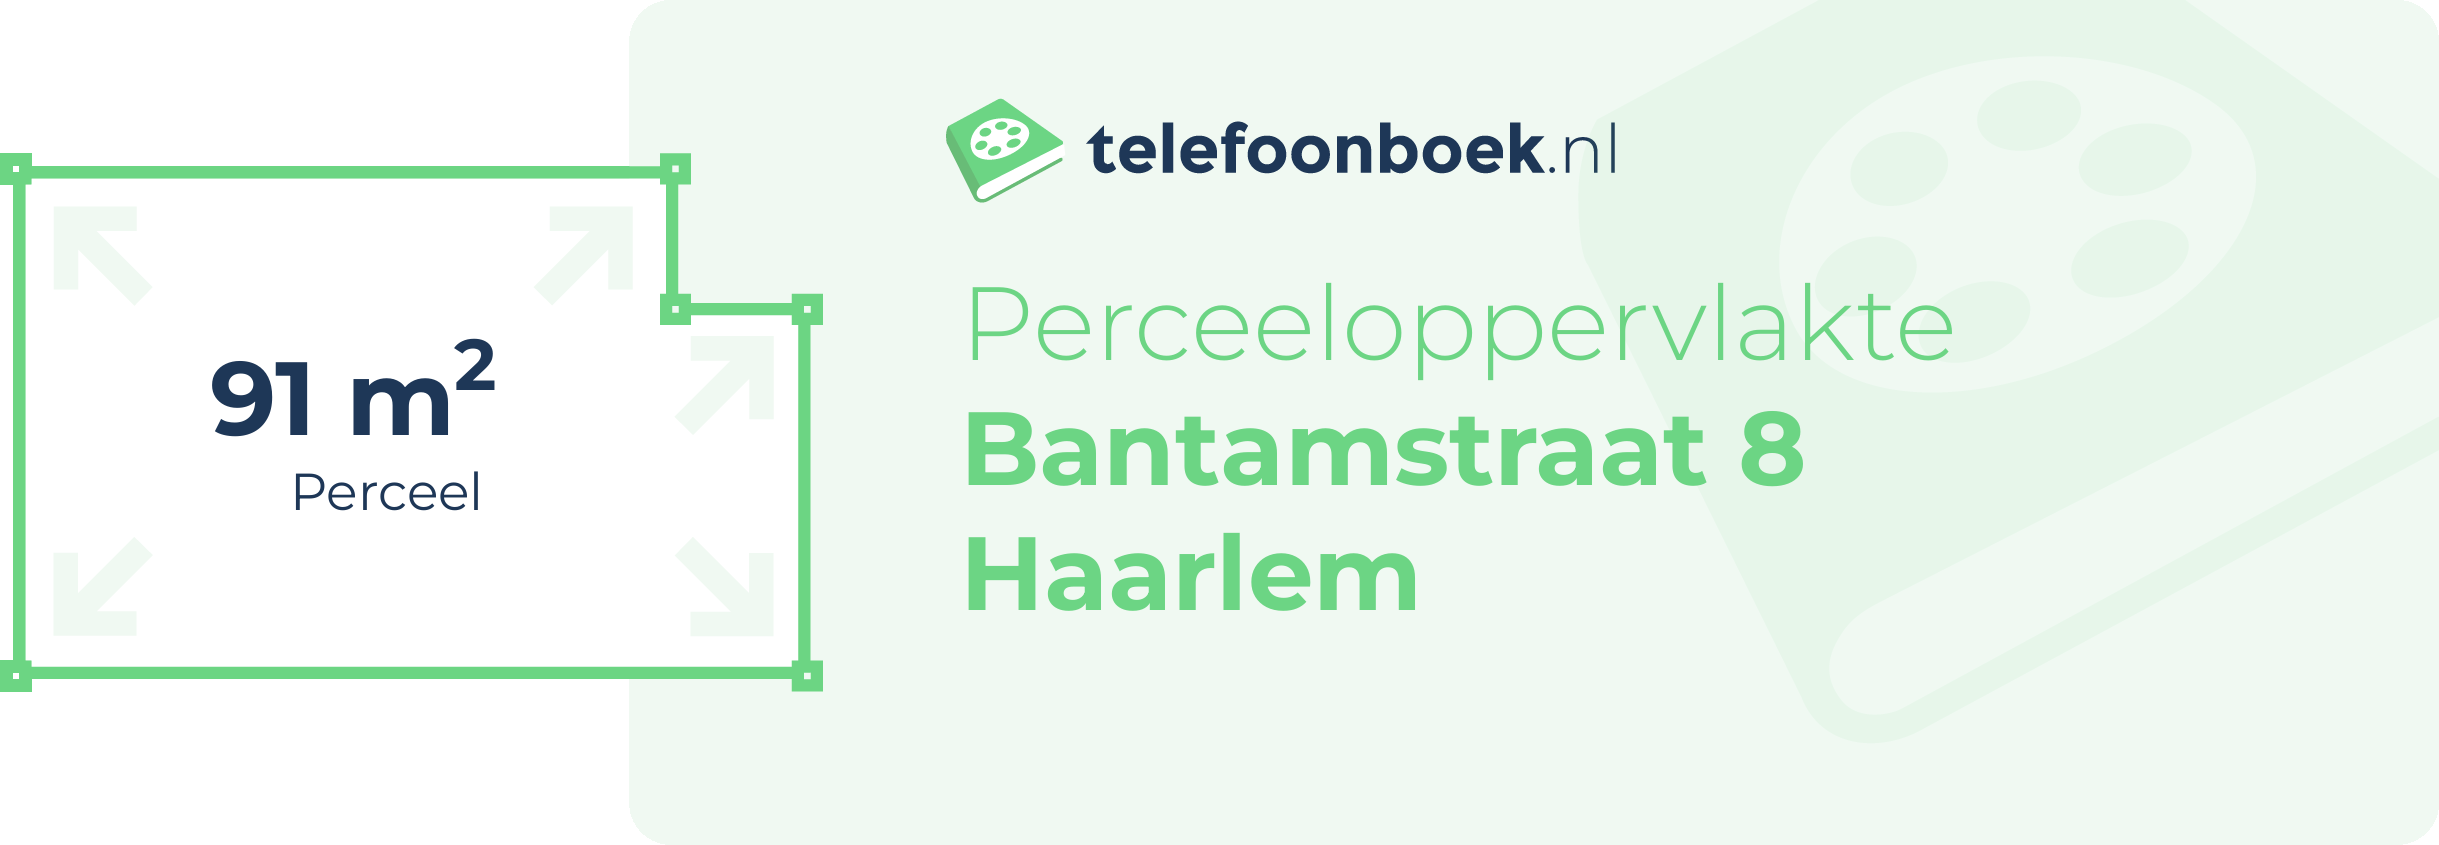 Perceeloppervlakte Bantamstraat 8 Haarlem